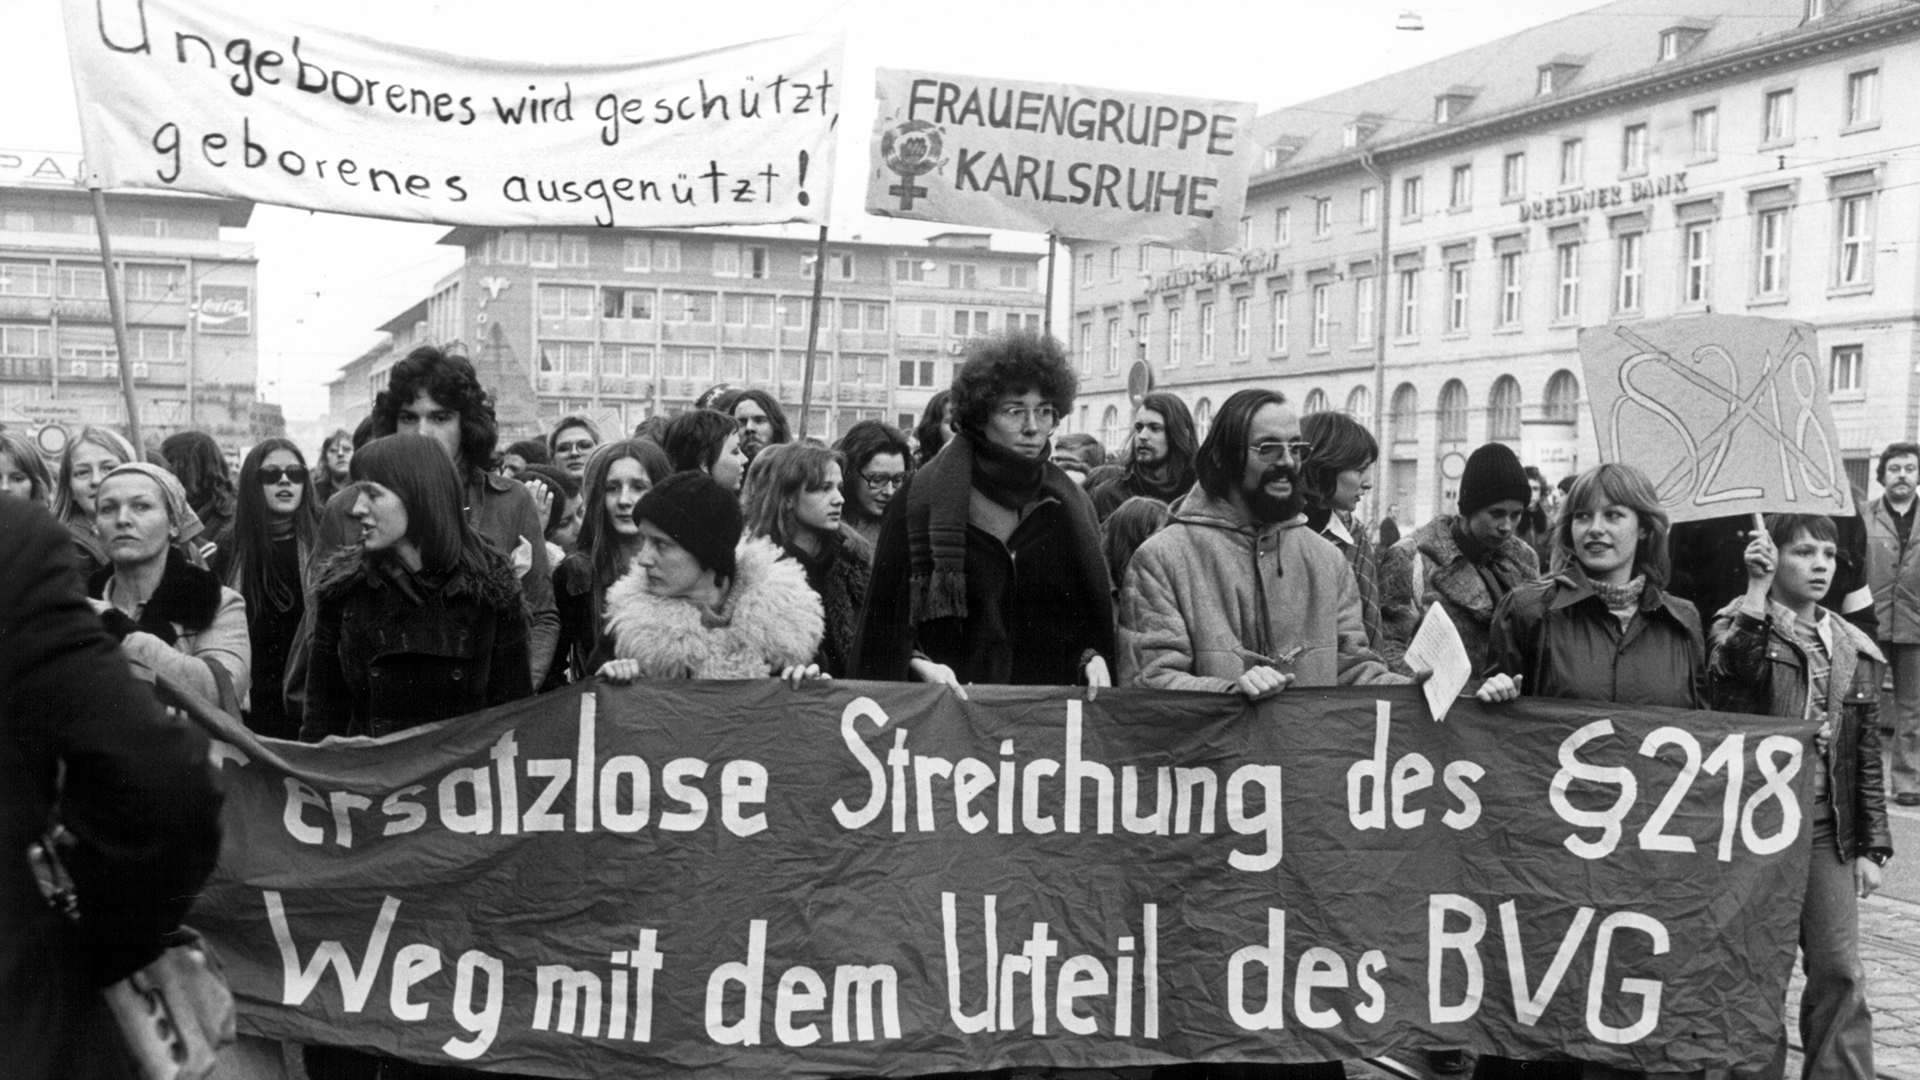 Nach der Urteilsverkündung demonstrieren Gegner des Paragraf 218 in Karlsruhe gegen das Urteil. (Archivbild: 25. Februar 1975)